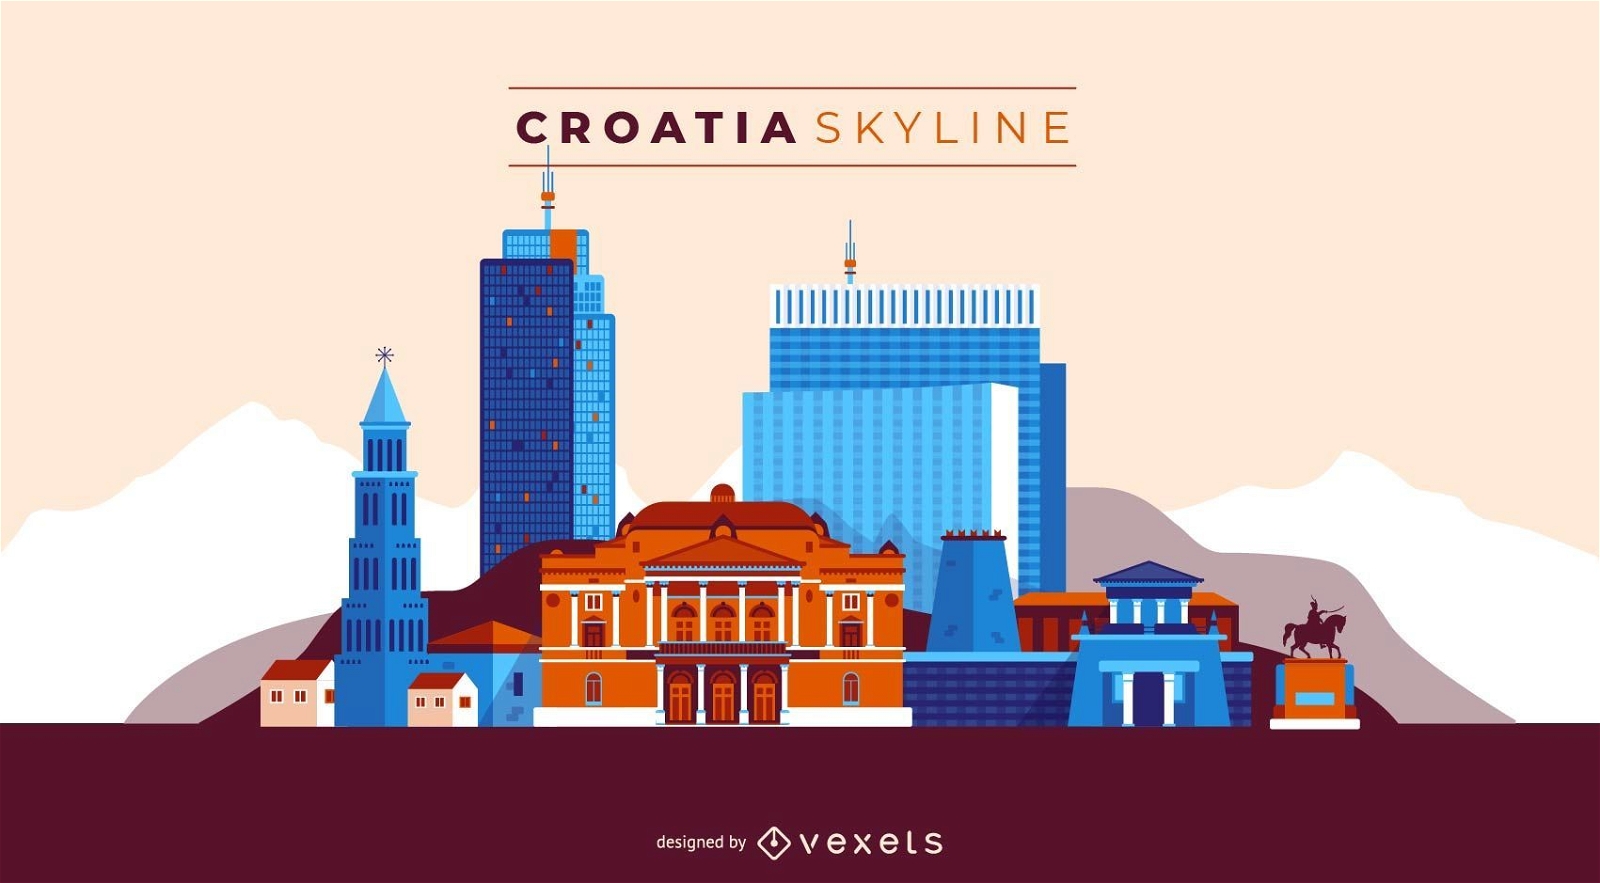 Croatia skyline illustration